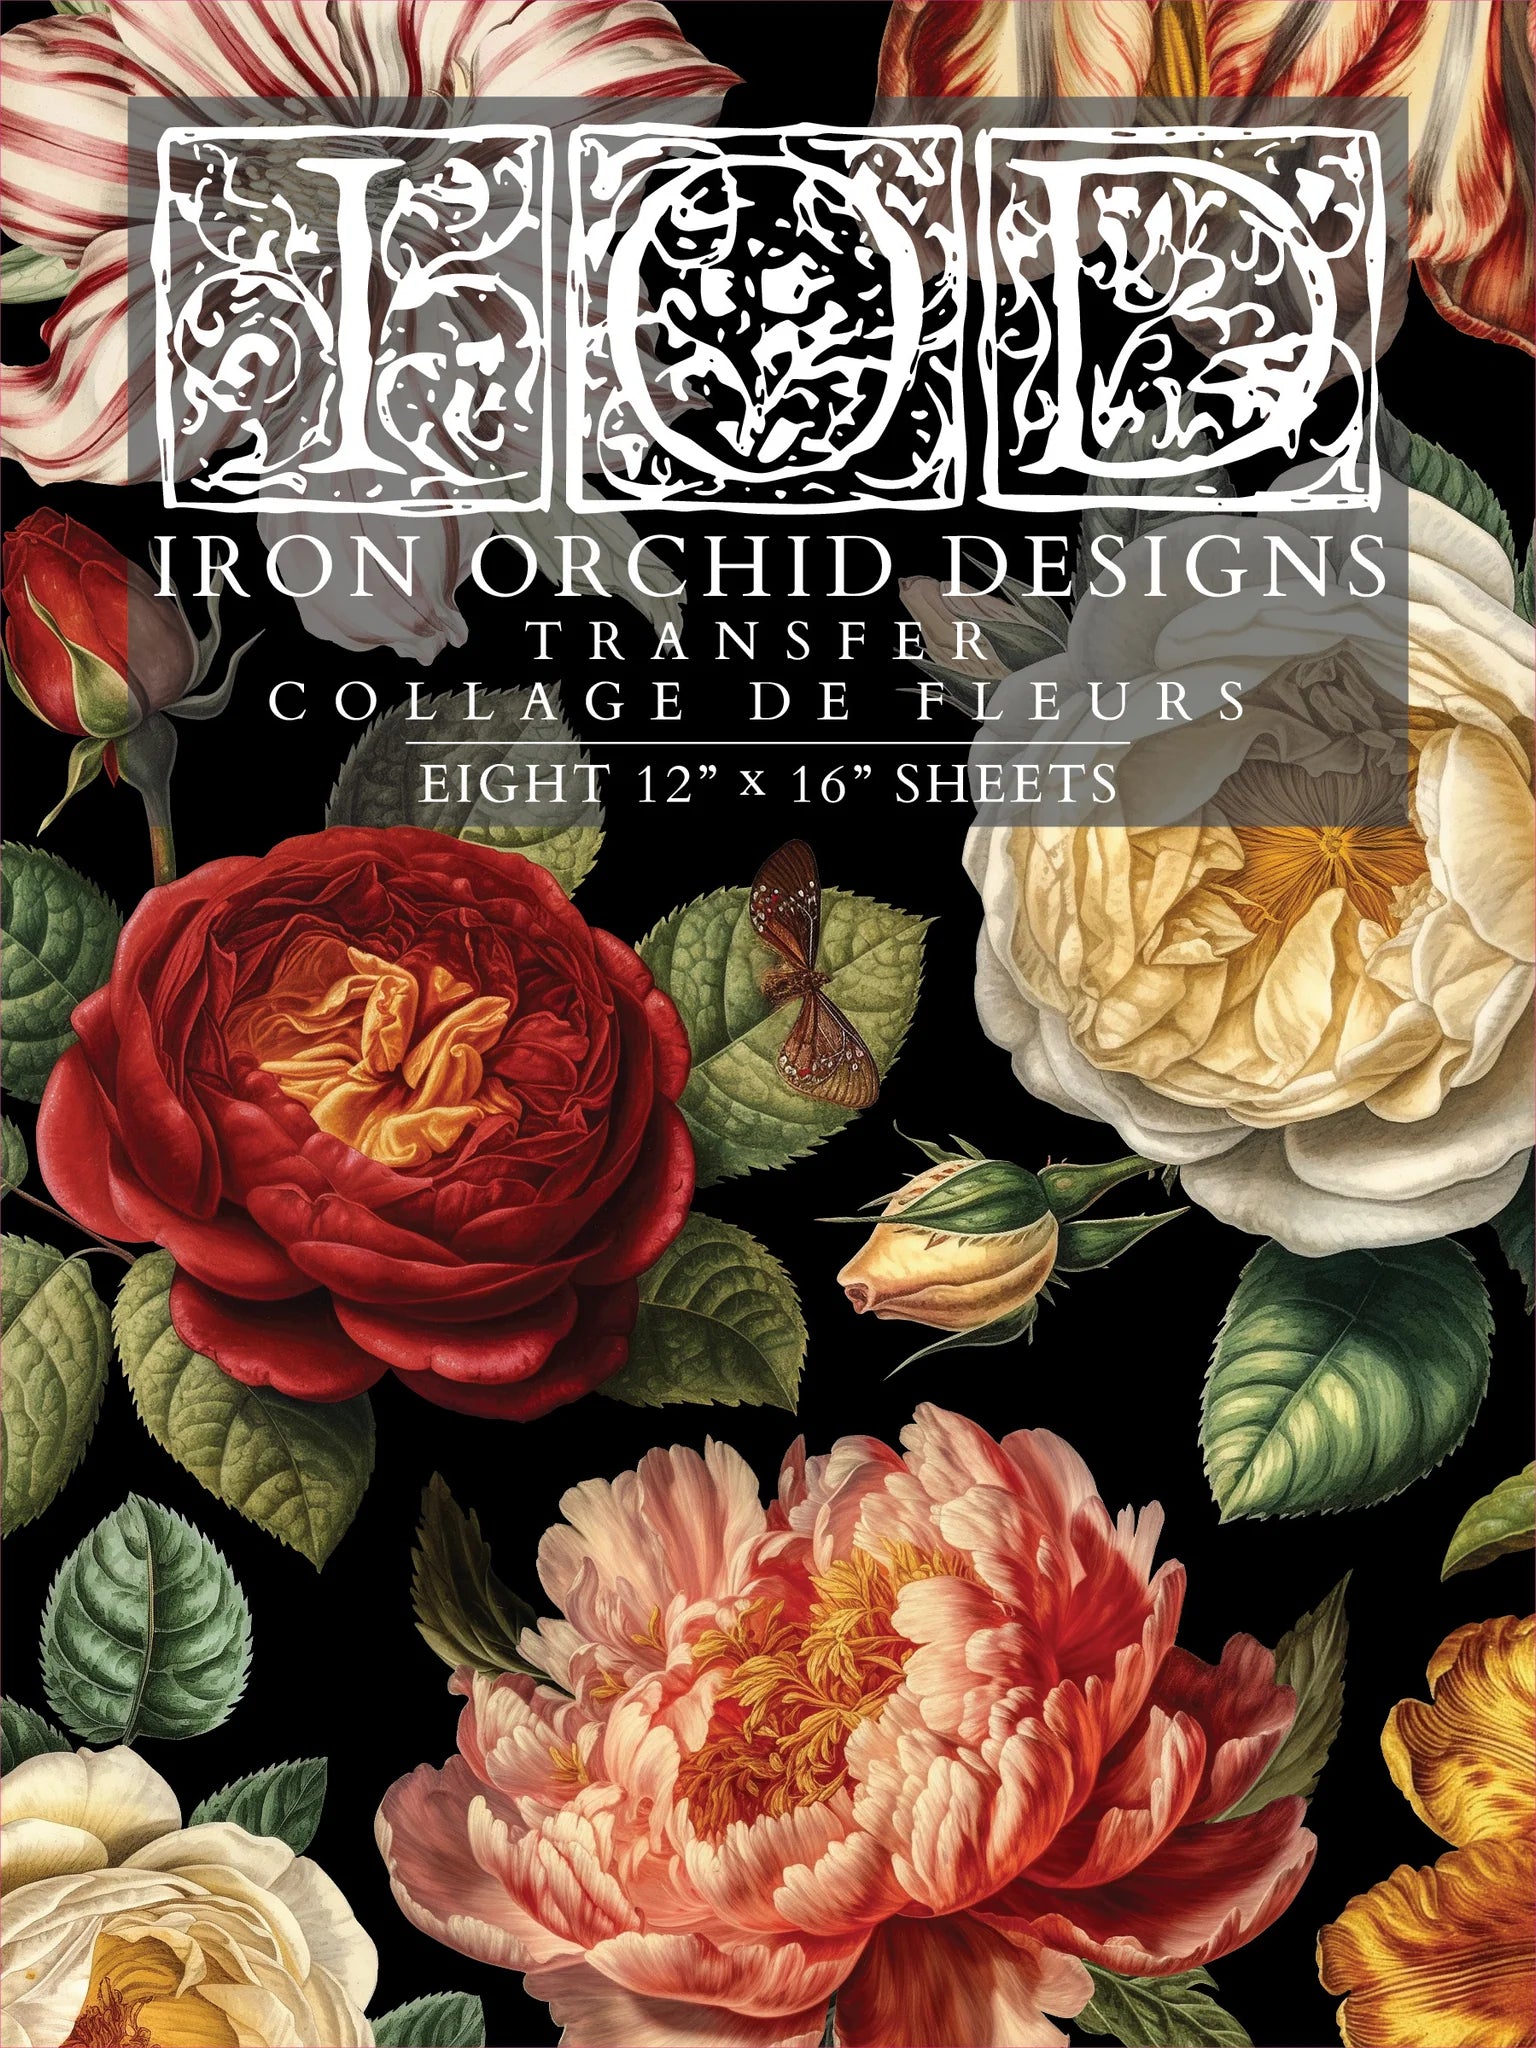 Collage de Fleurs Transfer durch Iron Orchid Designs IOD-Vorbestellung